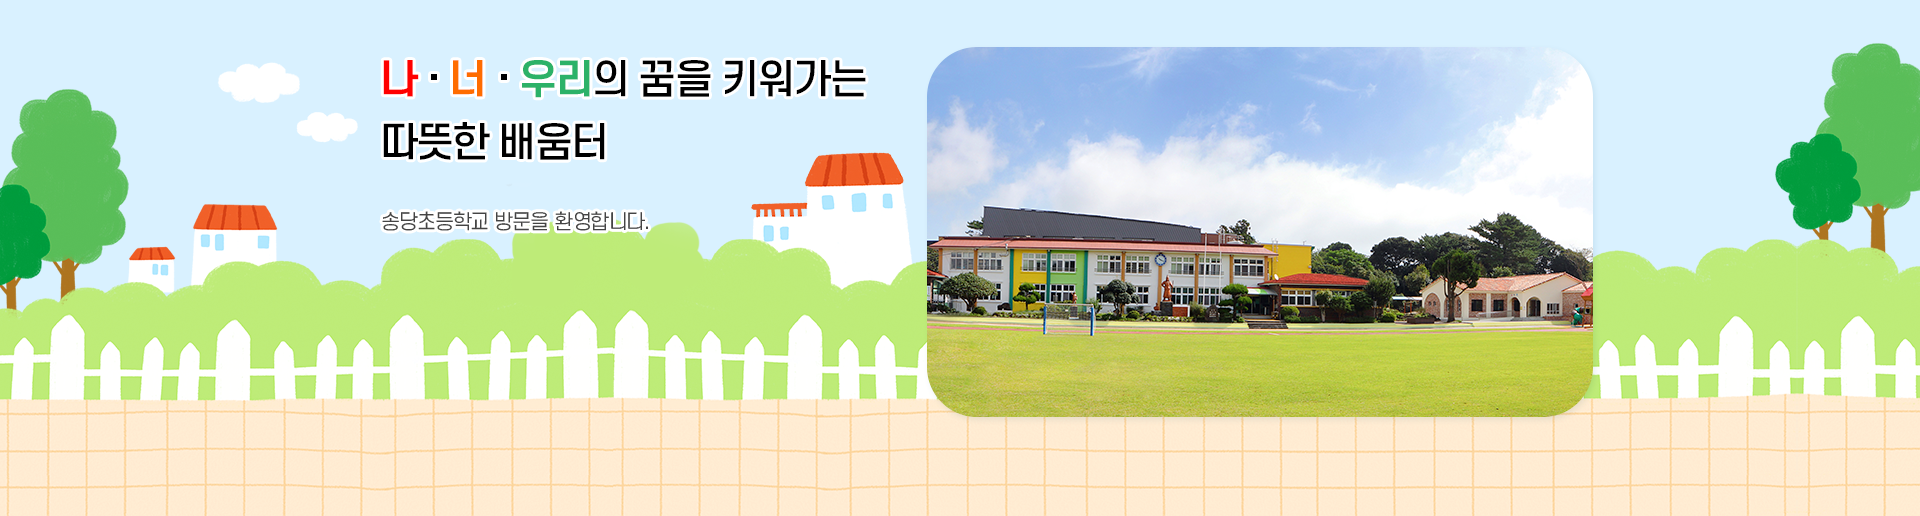 나 · 너 · 우리의 꿈을 키워가는 따뜻한 배움터 송당초등학교 방문을 환영합니다.